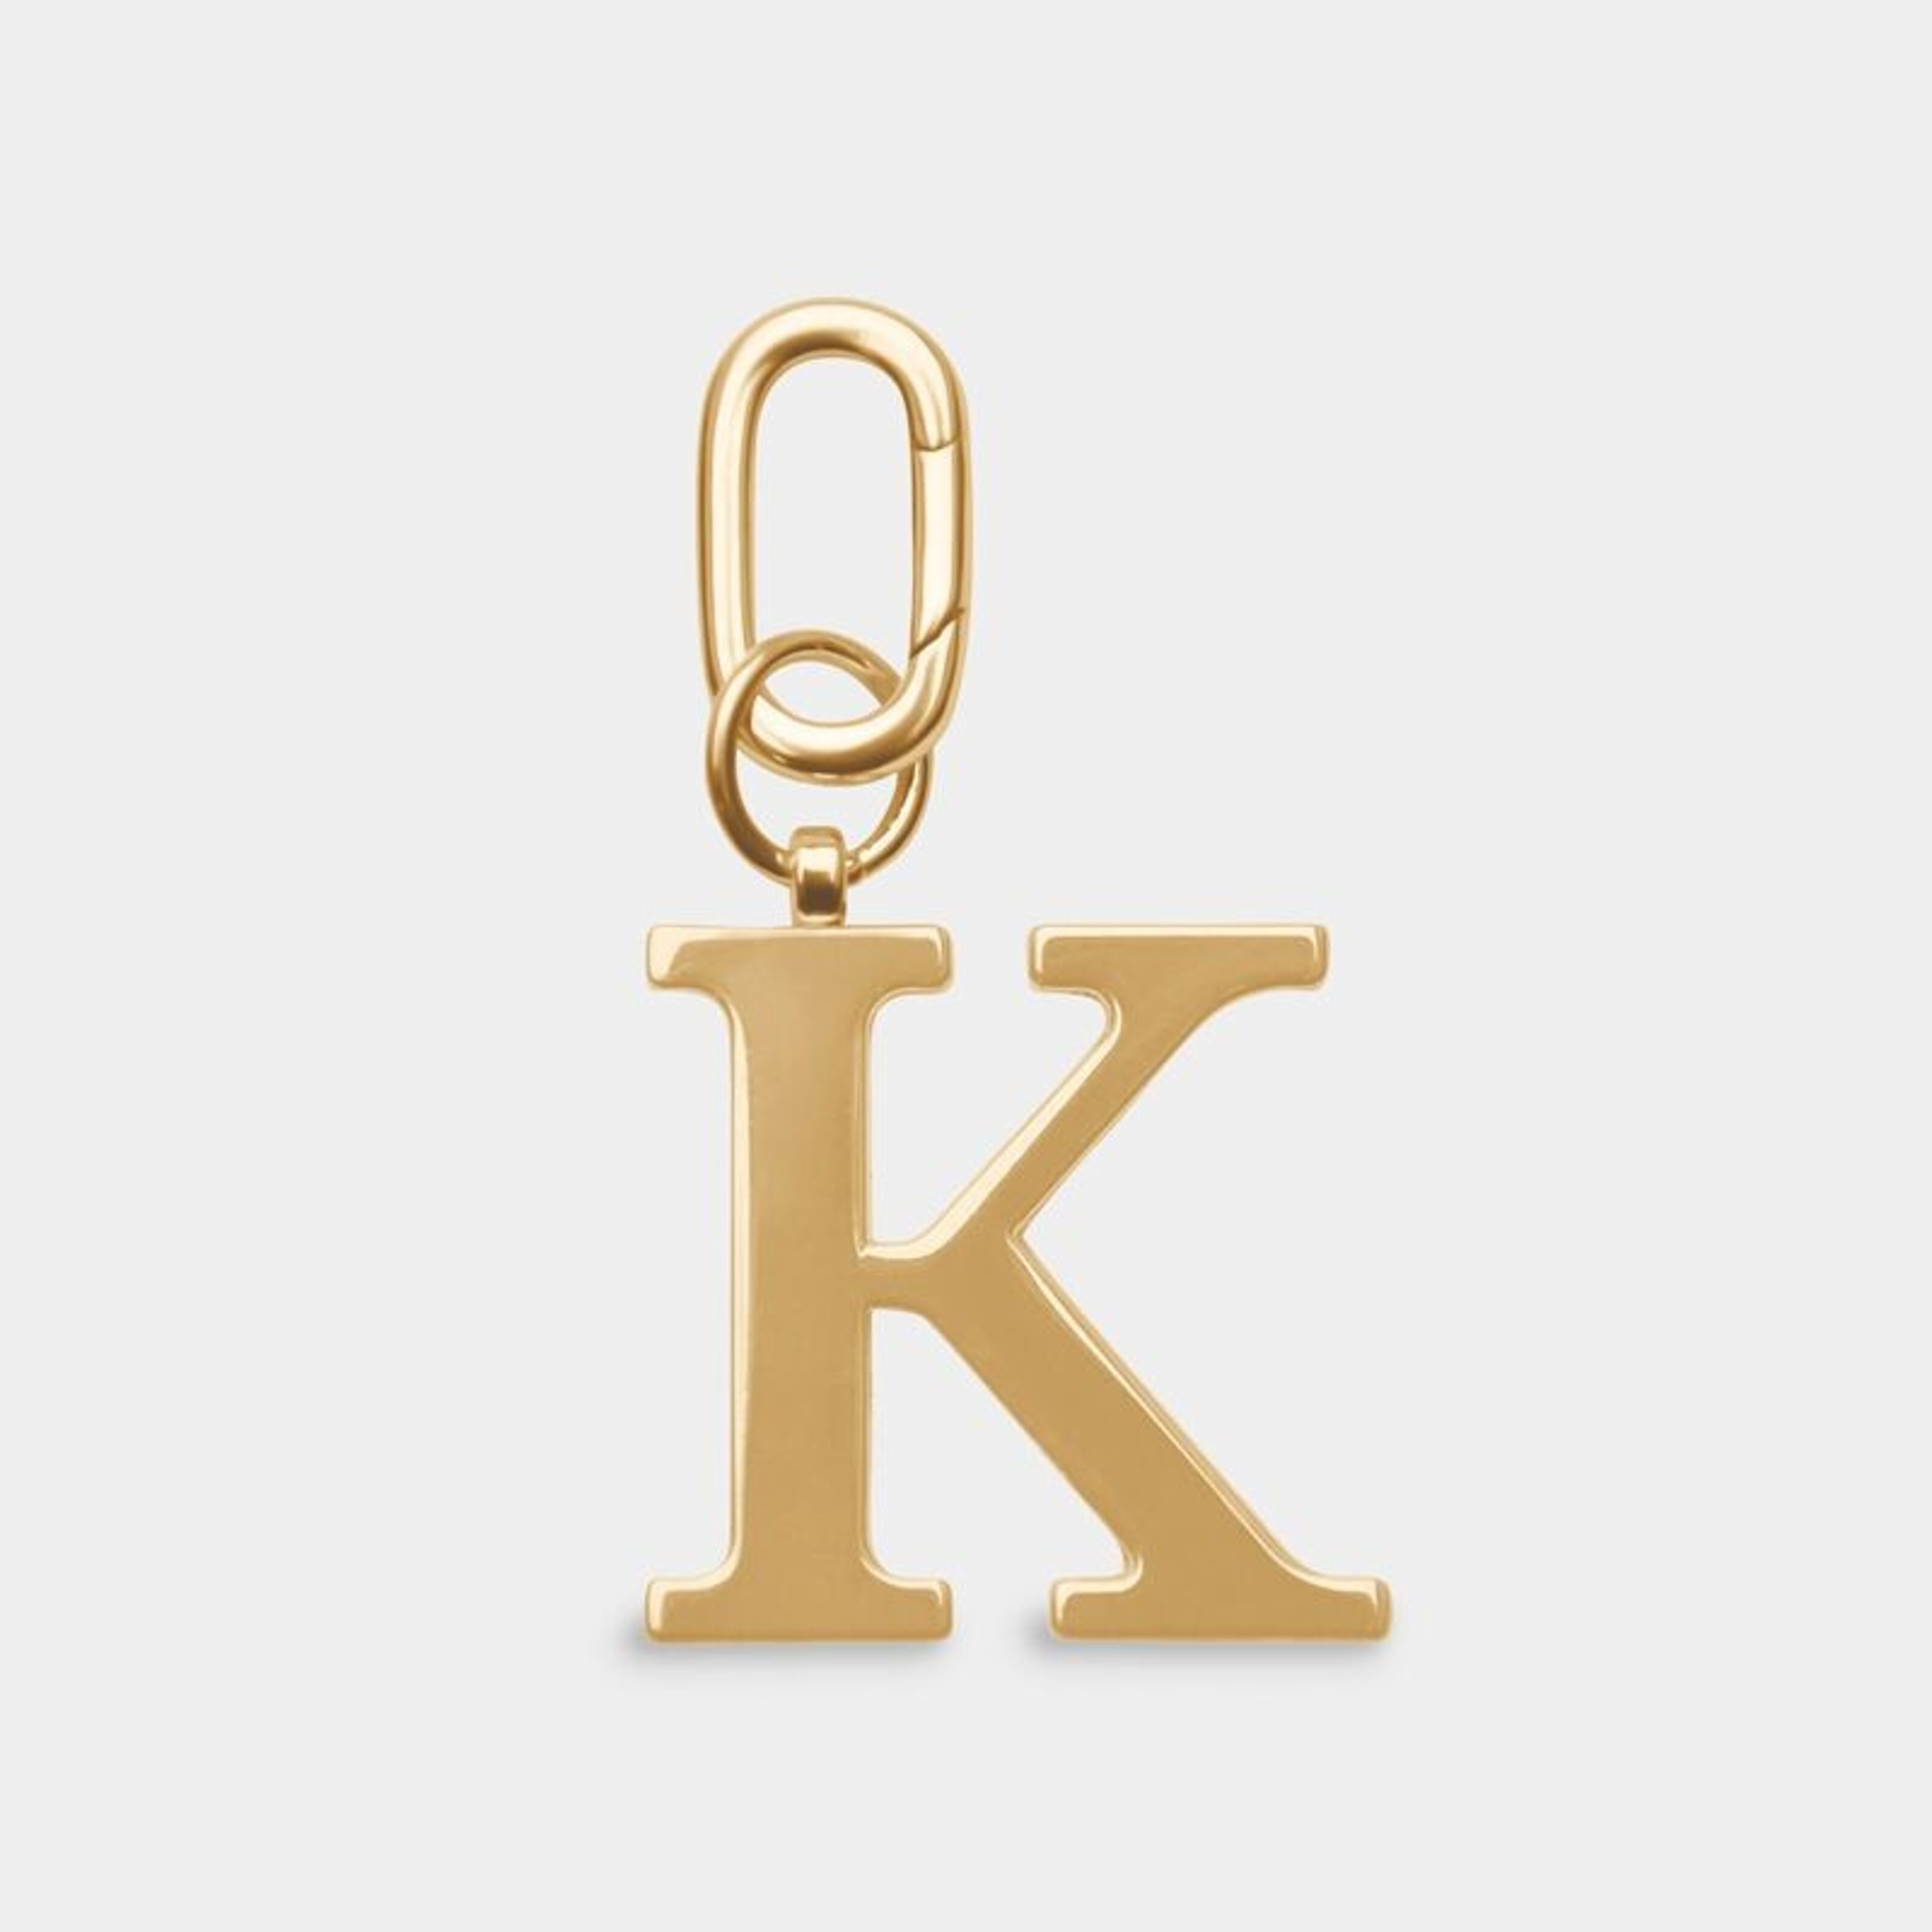 Kaufen Sie K – zu Großhandelspreisen Goldfarbener Metall-Buchstaben-Schlüsselanhänger